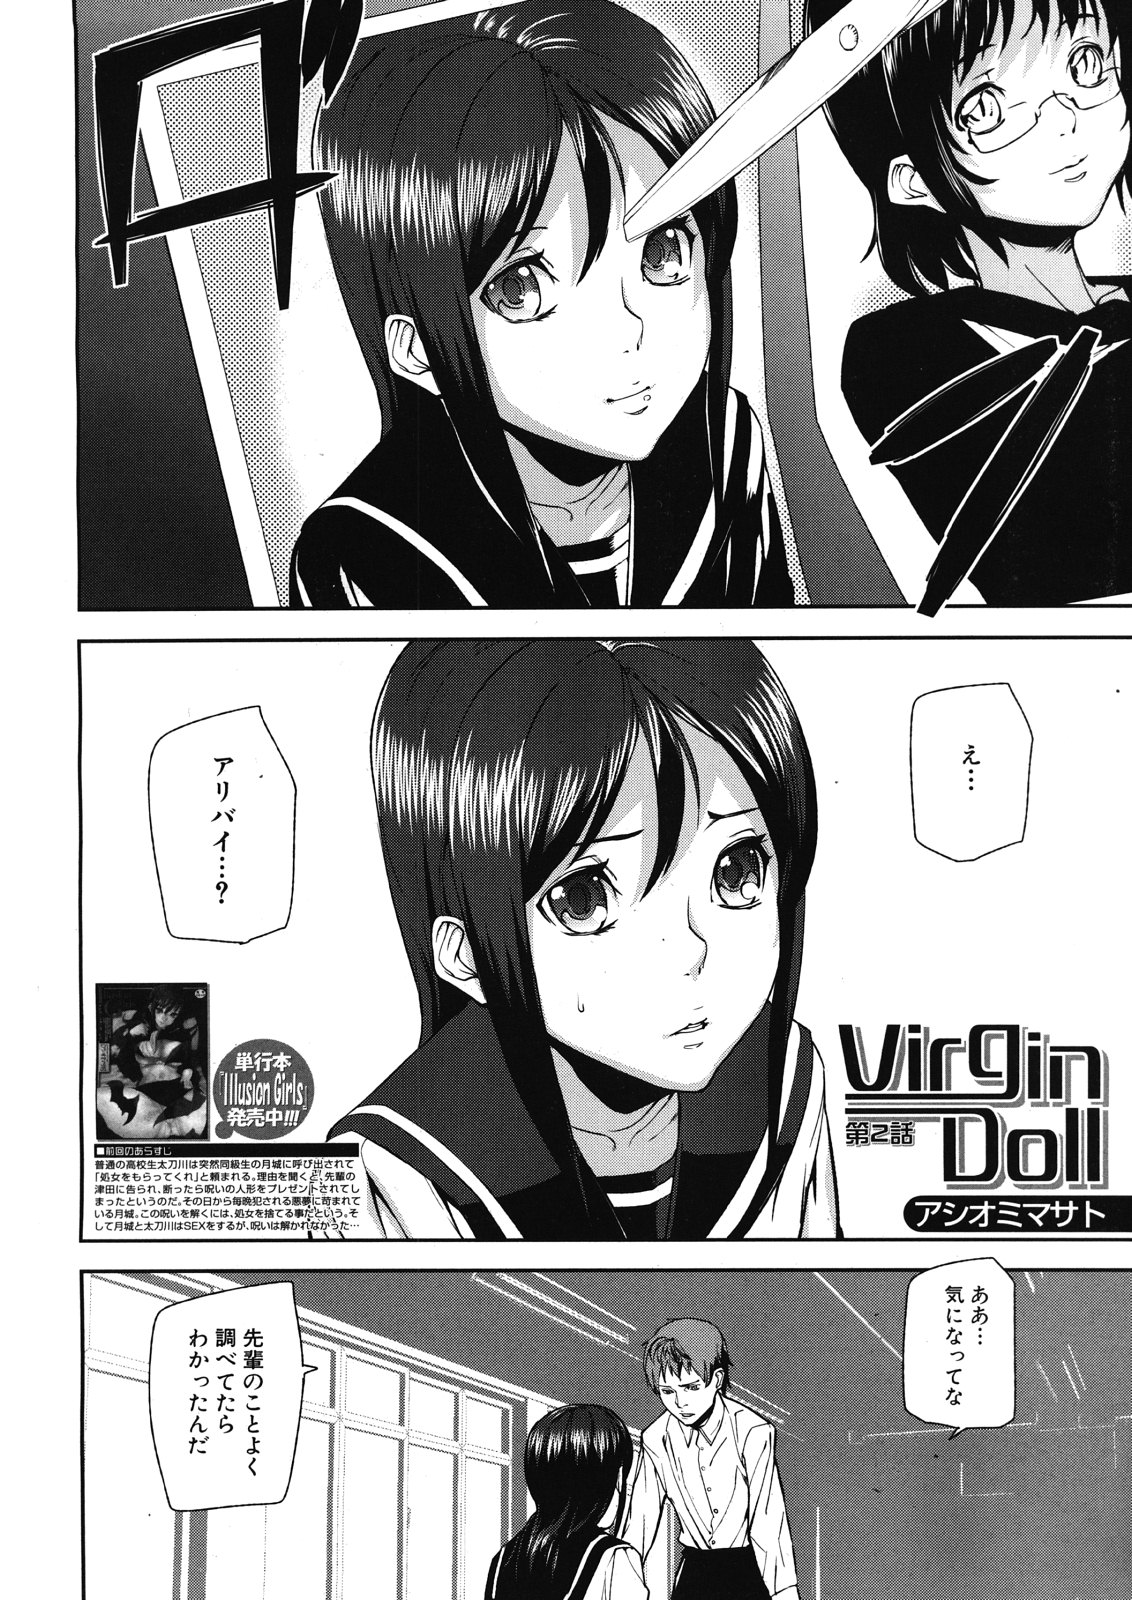 [Ashiomi Masato] Virgin Doll Ch. 1-3 page 34 full